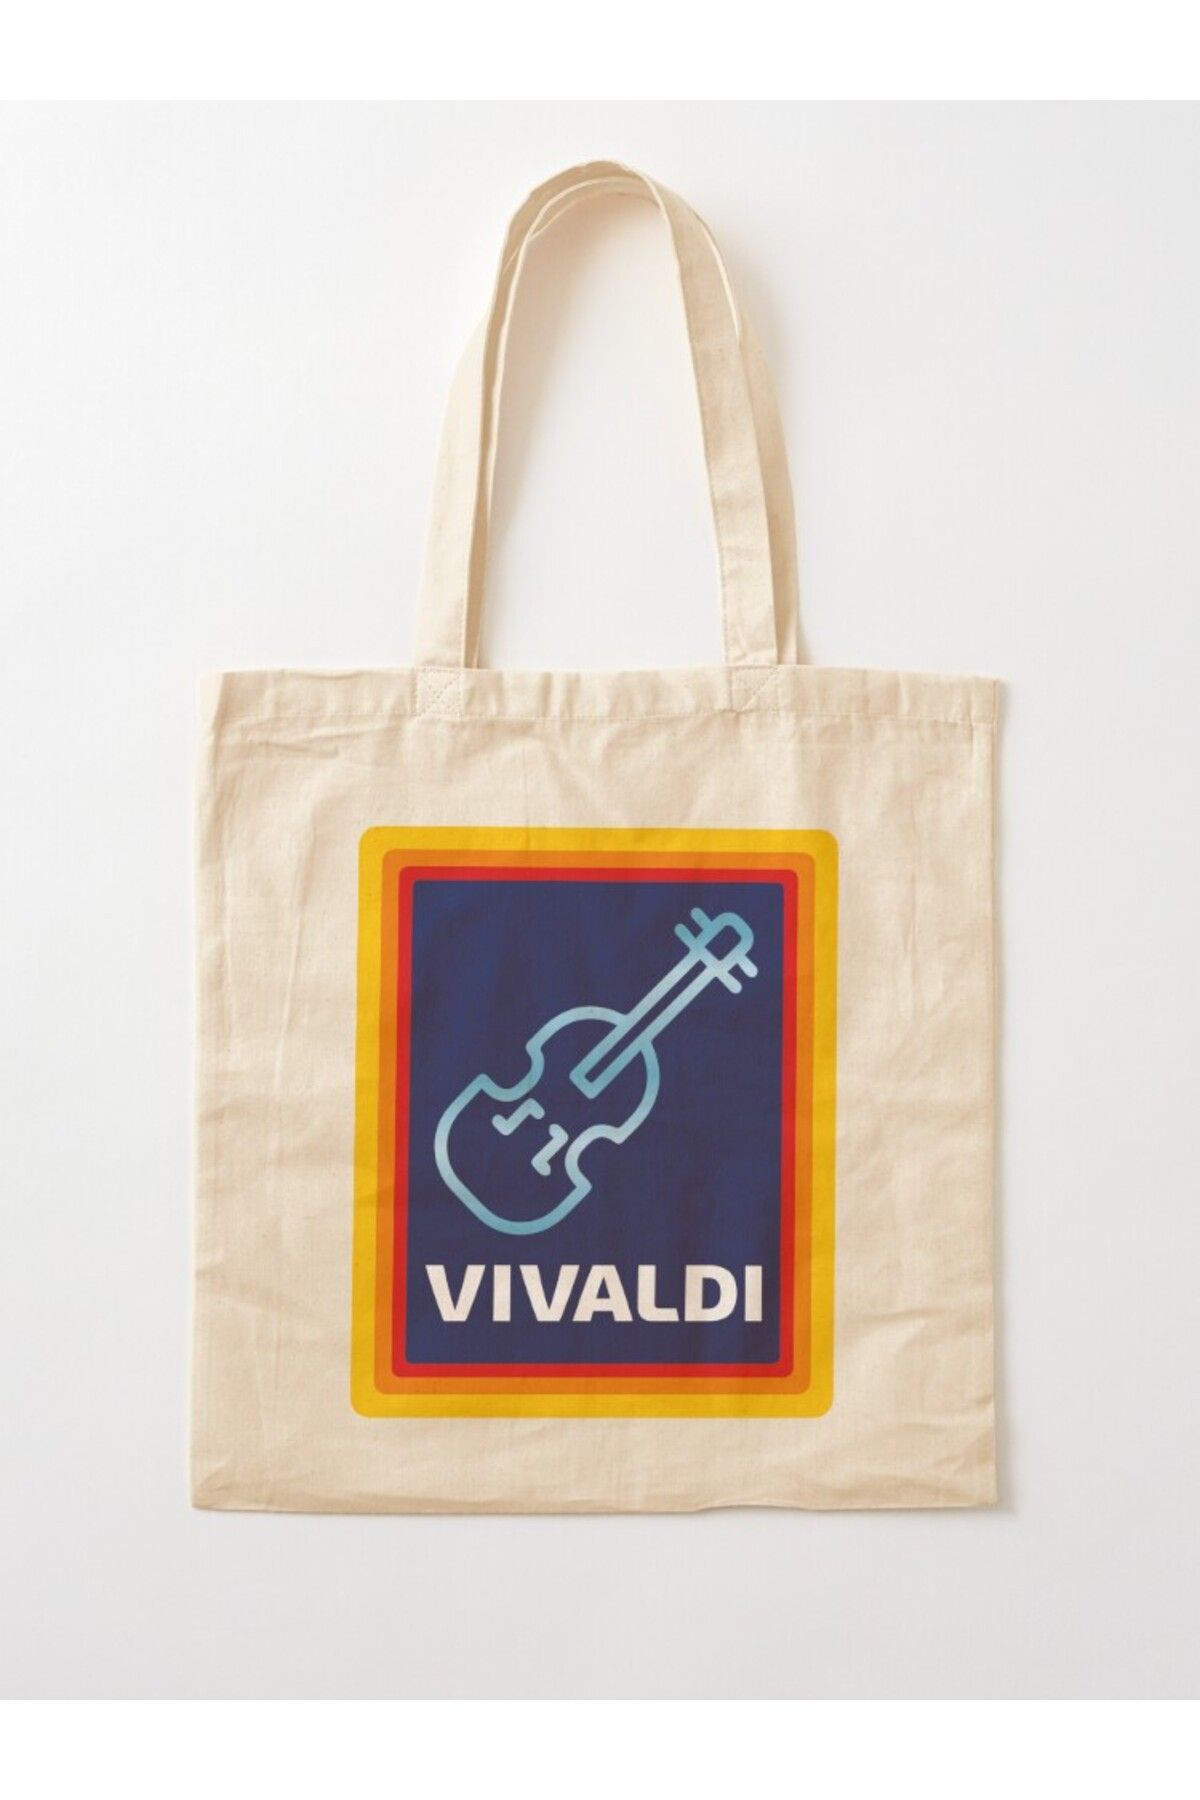 w house Körüklü Bez Omuz Çantası 17256 - Vivaldi grocery store violin